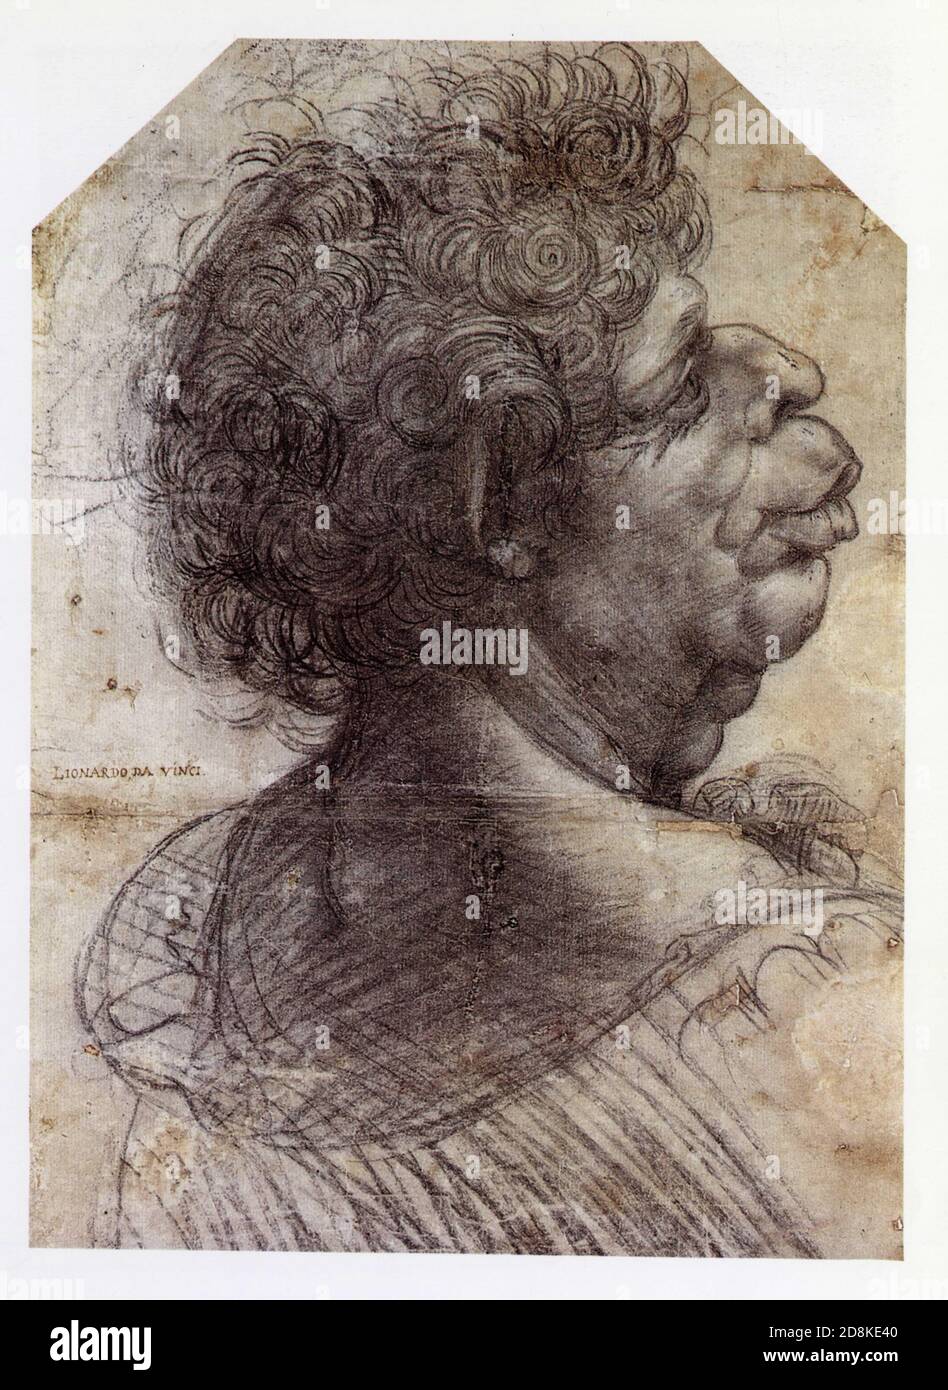 Léonard de Vinci. Une tête grotesque. 1504. Craie noire avec contours piqués pour le transfert Banque D'Images